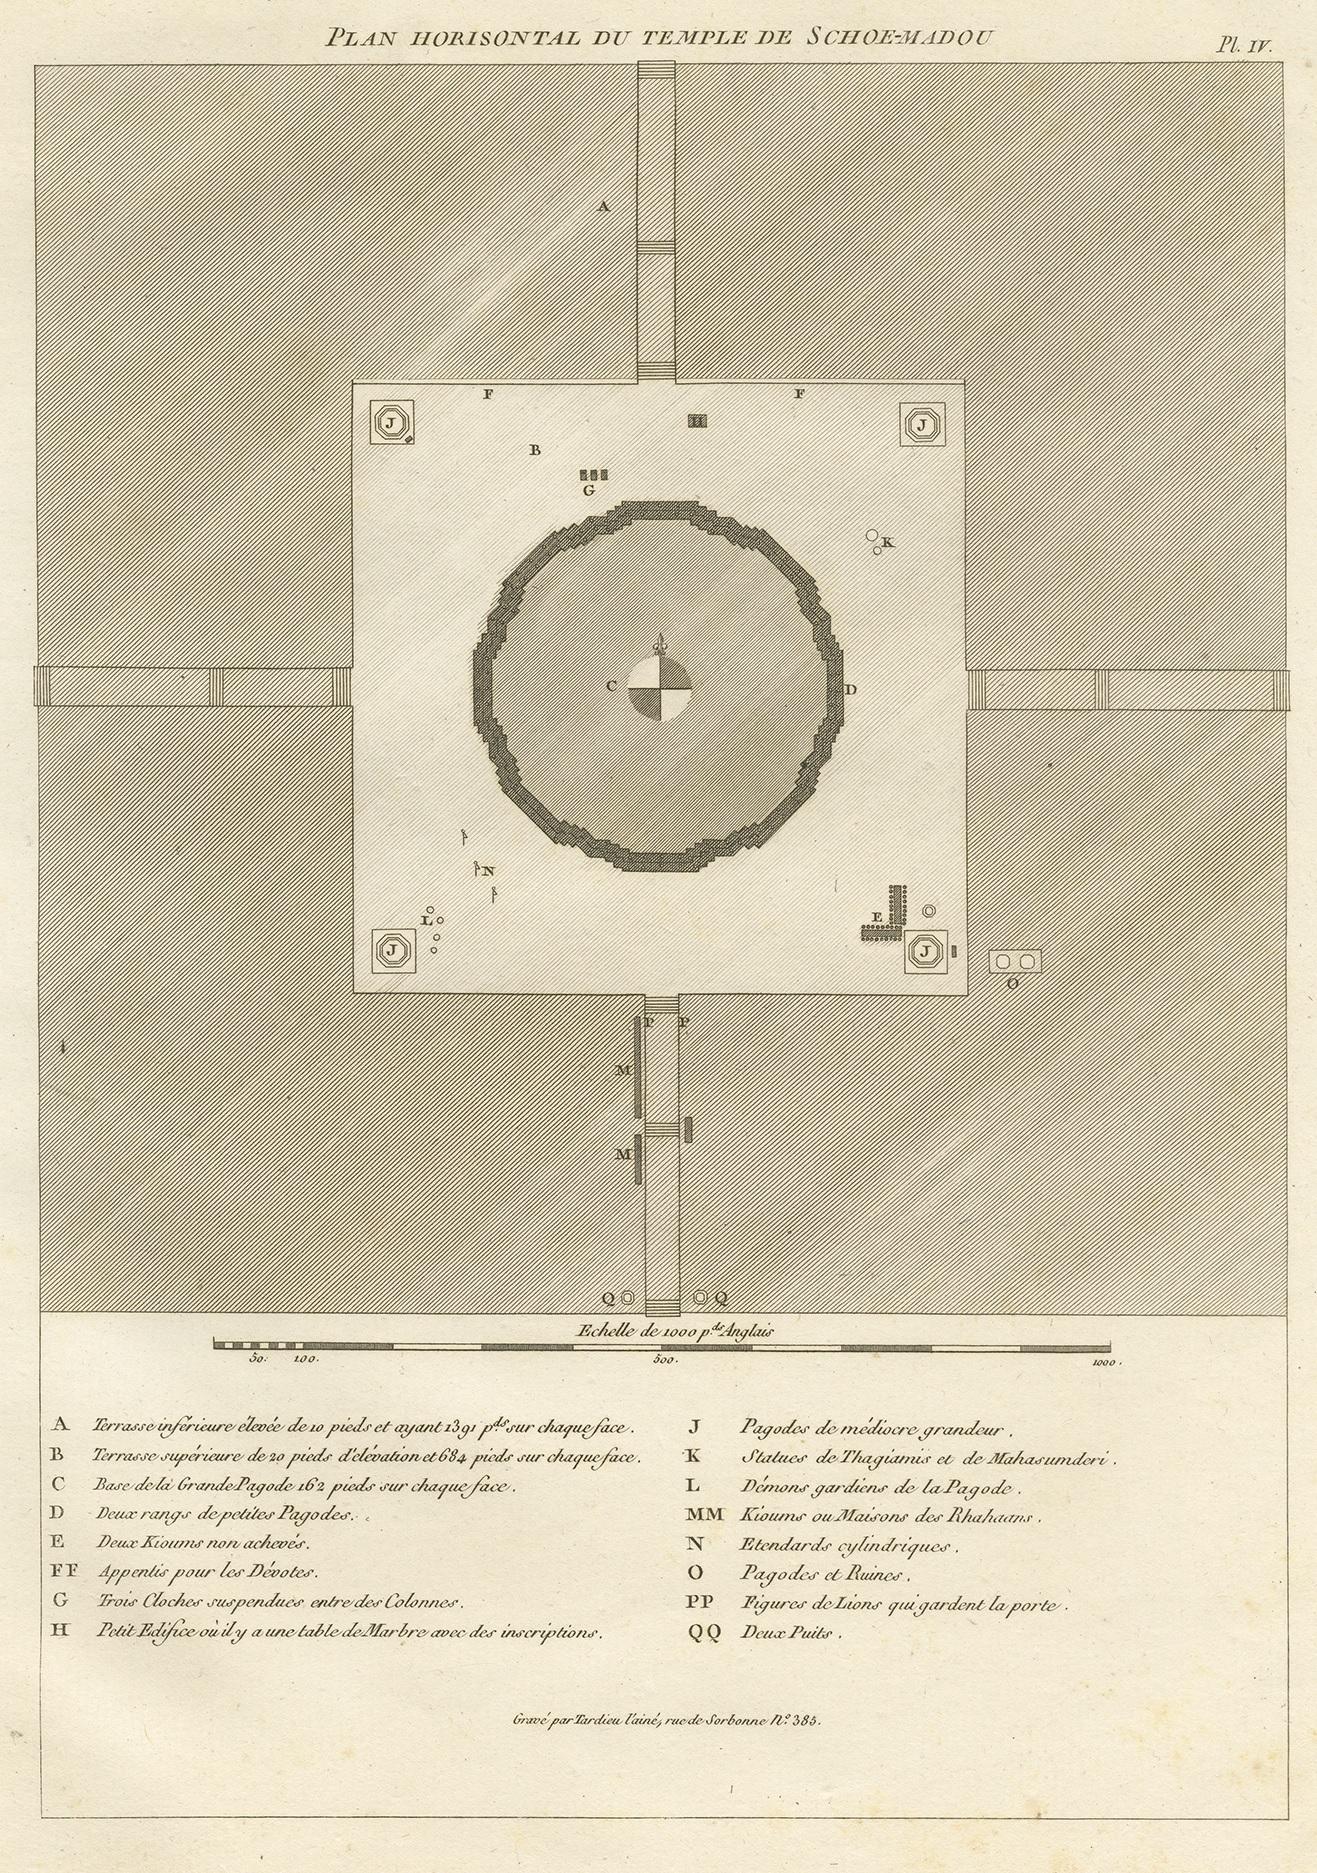 Antiker Druck mit dem Titel 'Plan Horisontal du Temple de Schoe-Madou'. Plan eines birmanischen Tempels. Dieser Druck stammt aus der 